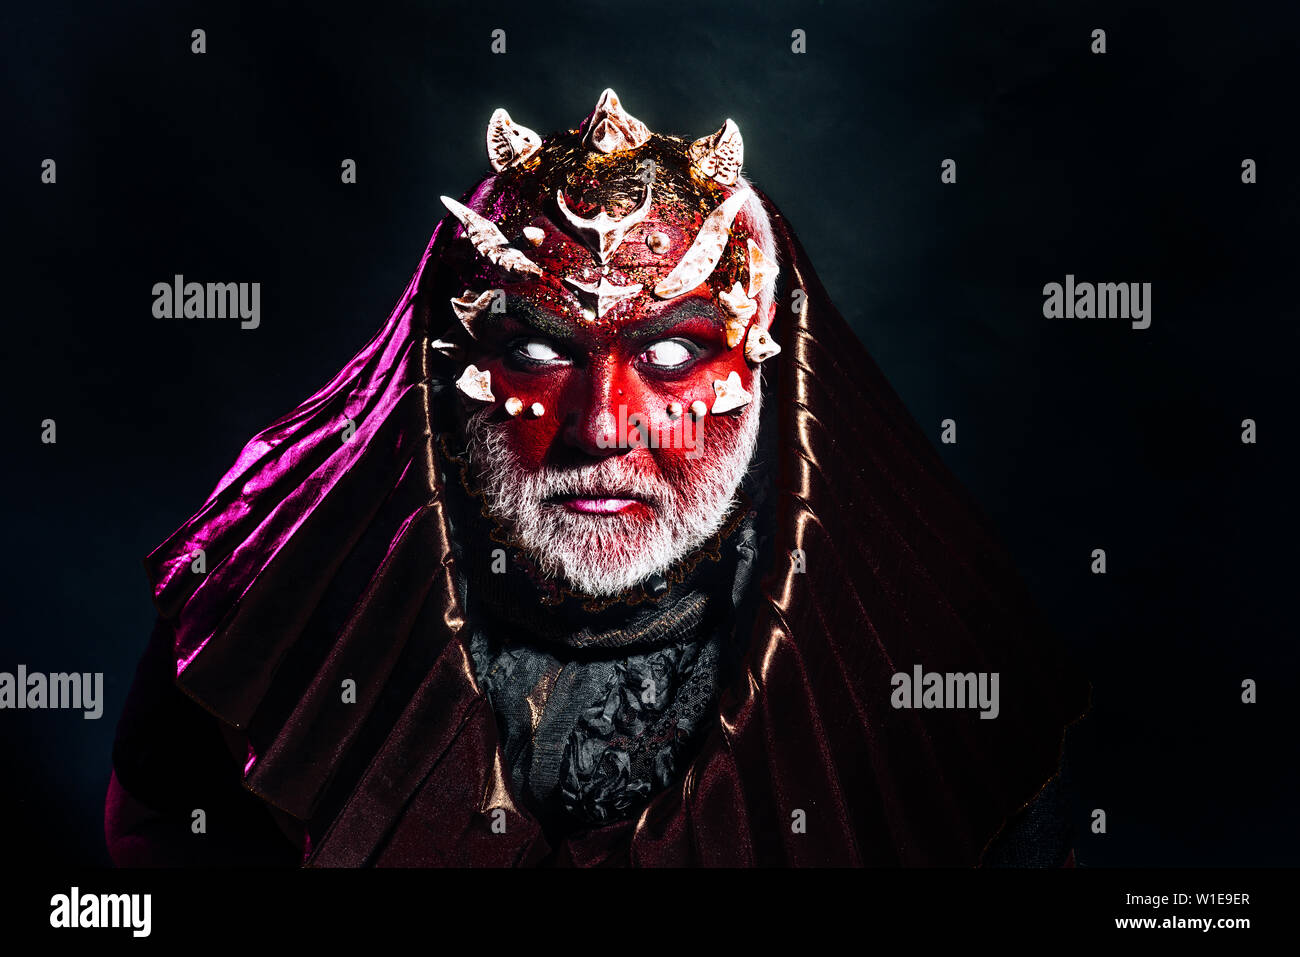 Dämon mit Dornen auf rote Haut tragen metallische Haube. Bärtiger Mann im  Halloween Kostüm. Teufel mit blinden Augen auf schwarzem Hintergrund, Hölle  und Te isoliert Stockfotografie - Alamy